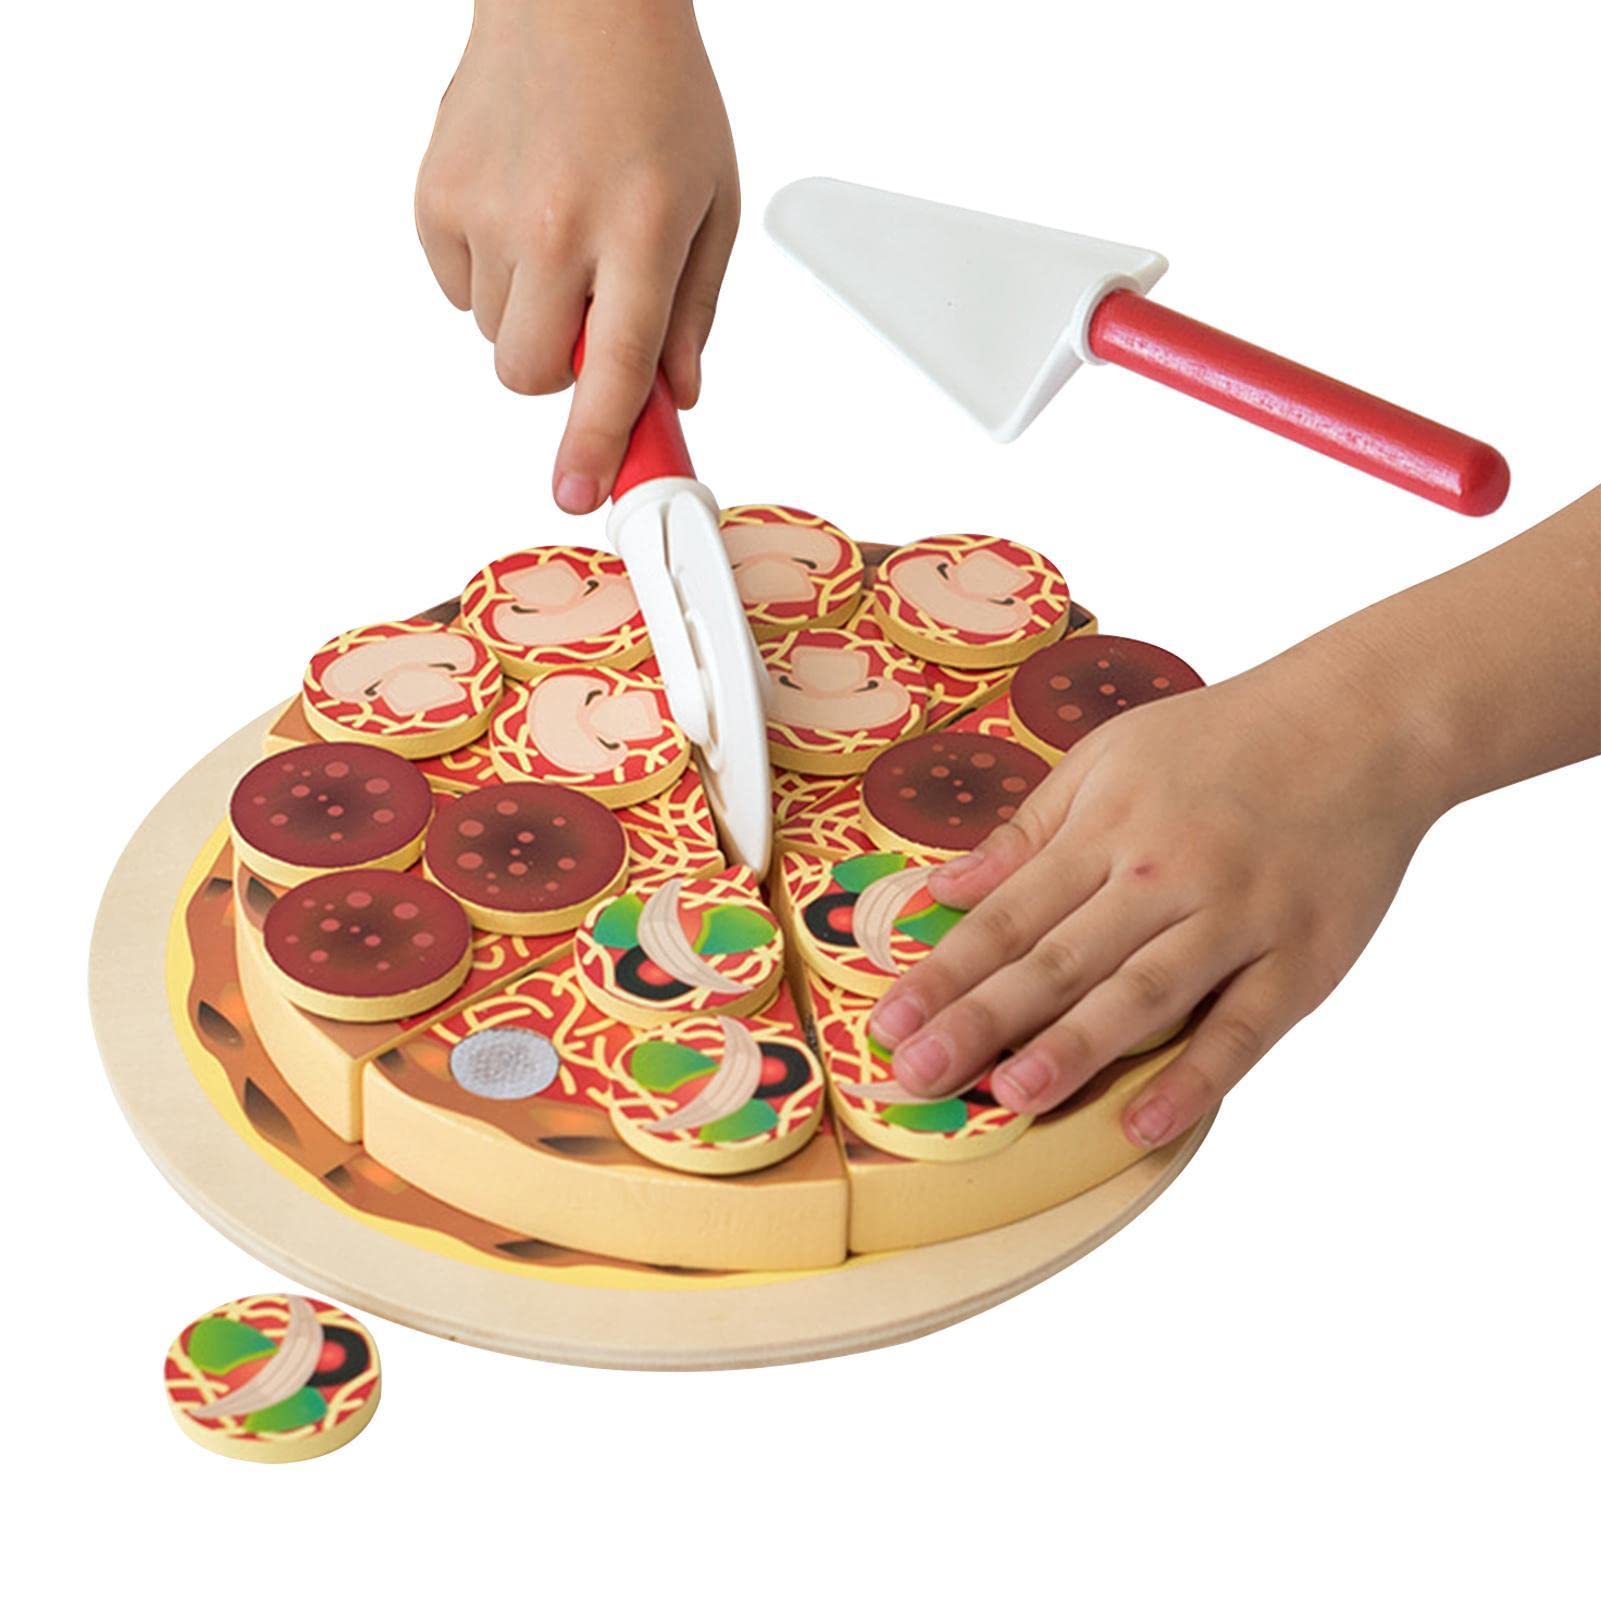 Abbto 2 Pcs Pizza Spielen,Spiel-Lebensmittel-Sets für die Kinderküche | Play Food Toy Set, ideal für eine vorgetäuschte Pizza-Party, Fast Food Cooking und Cutting Play Set Toy